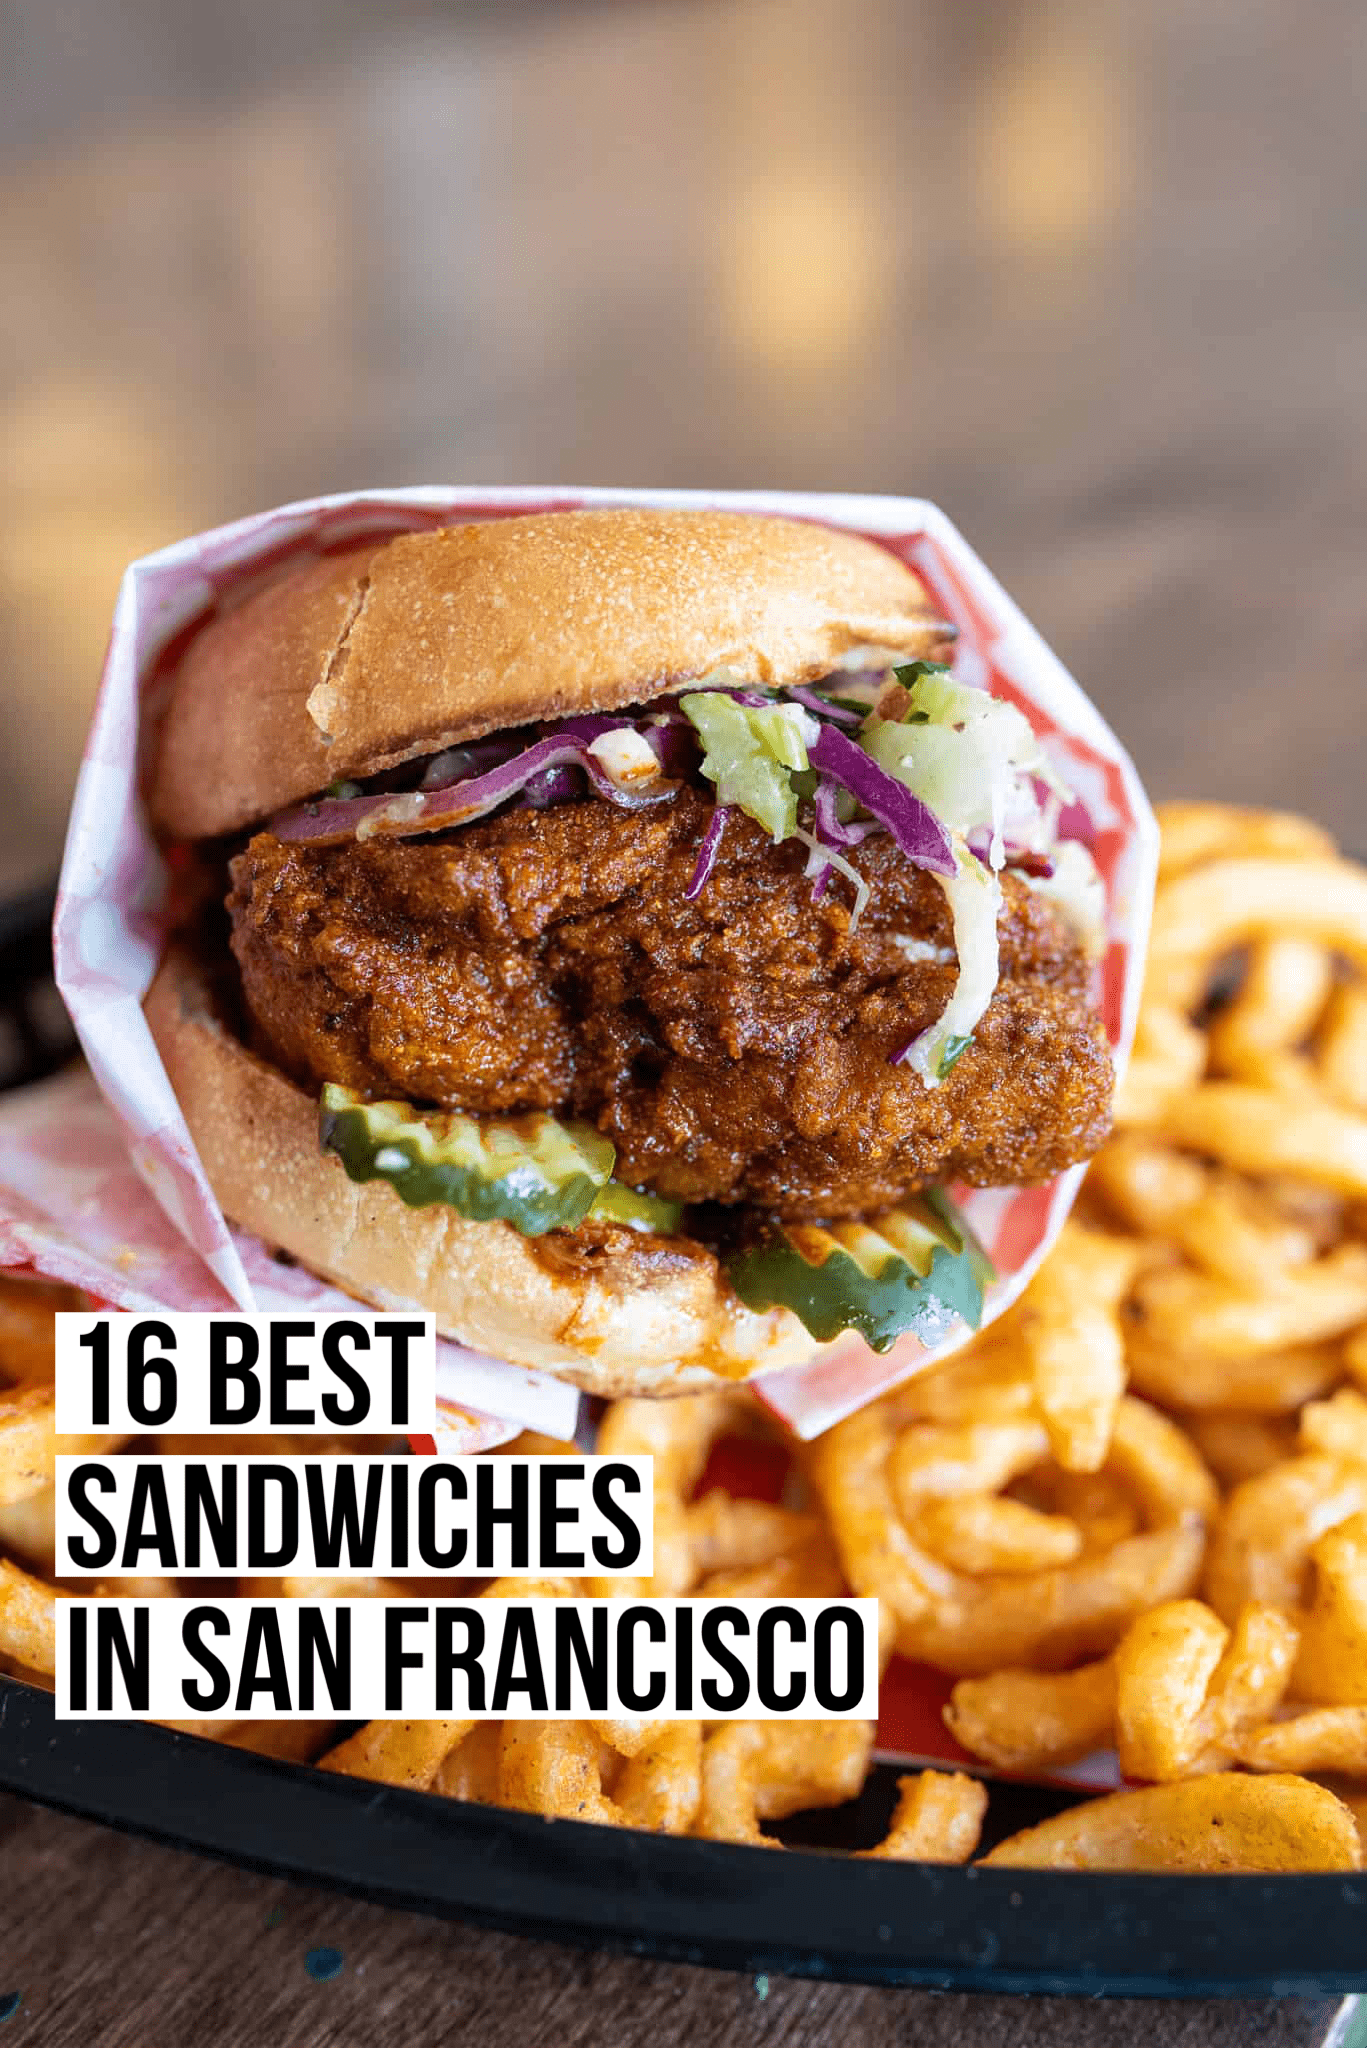 16 Best Sandwiches in San Francisco